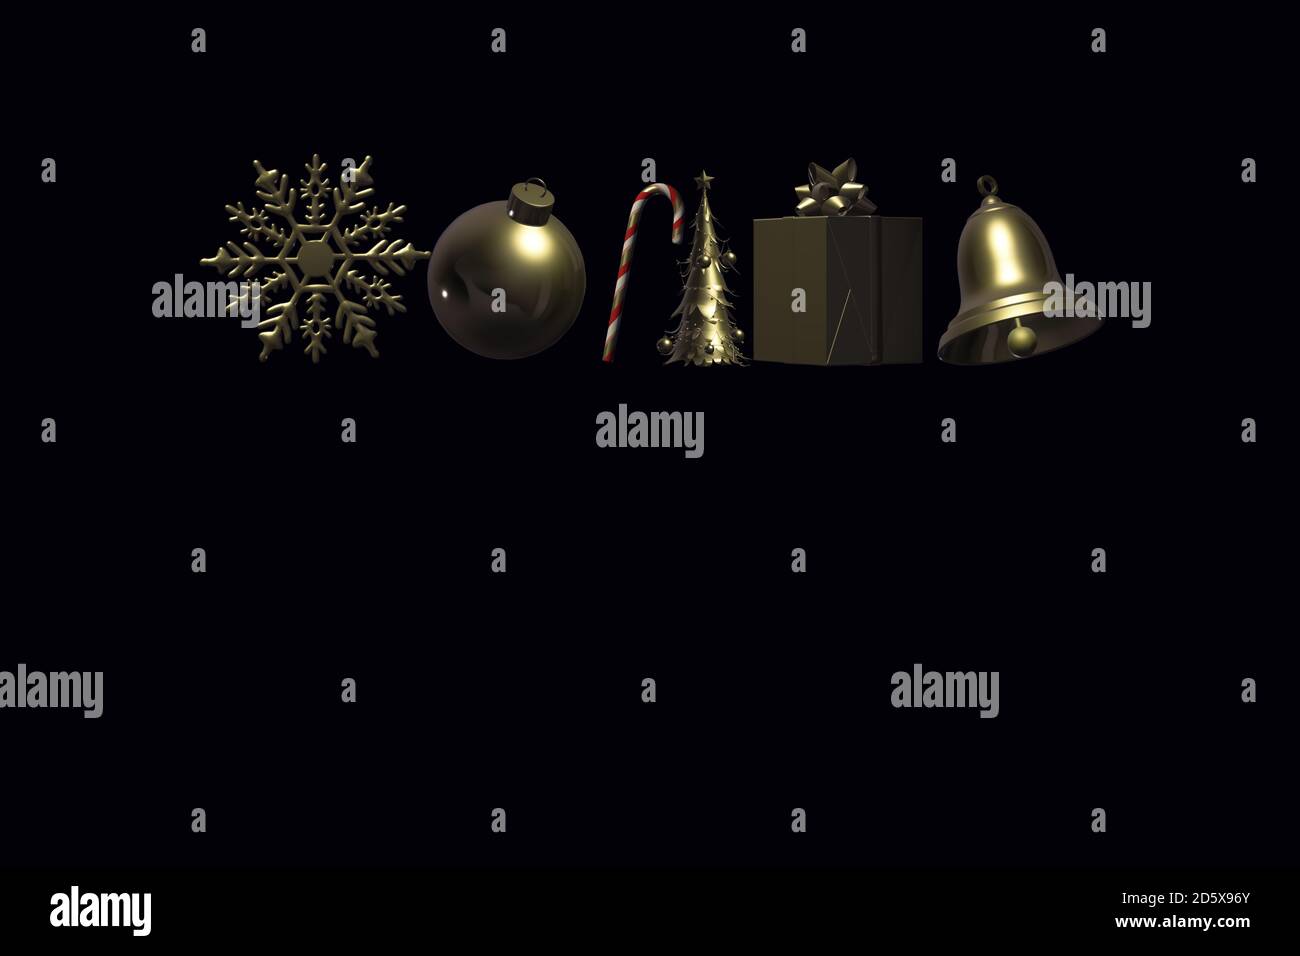 Symbole von Weihnachten. Gold glänzende Symbole von Weihnachten auf schwarzem Hintergrund. Schneeflocke, Ball, Süßigkeiten, Weihnachtsbaum, Geschenkbox, Glocke. Platz für Text, Grußkarte, Kopfzeile. 3D-Rendering Stockfoto